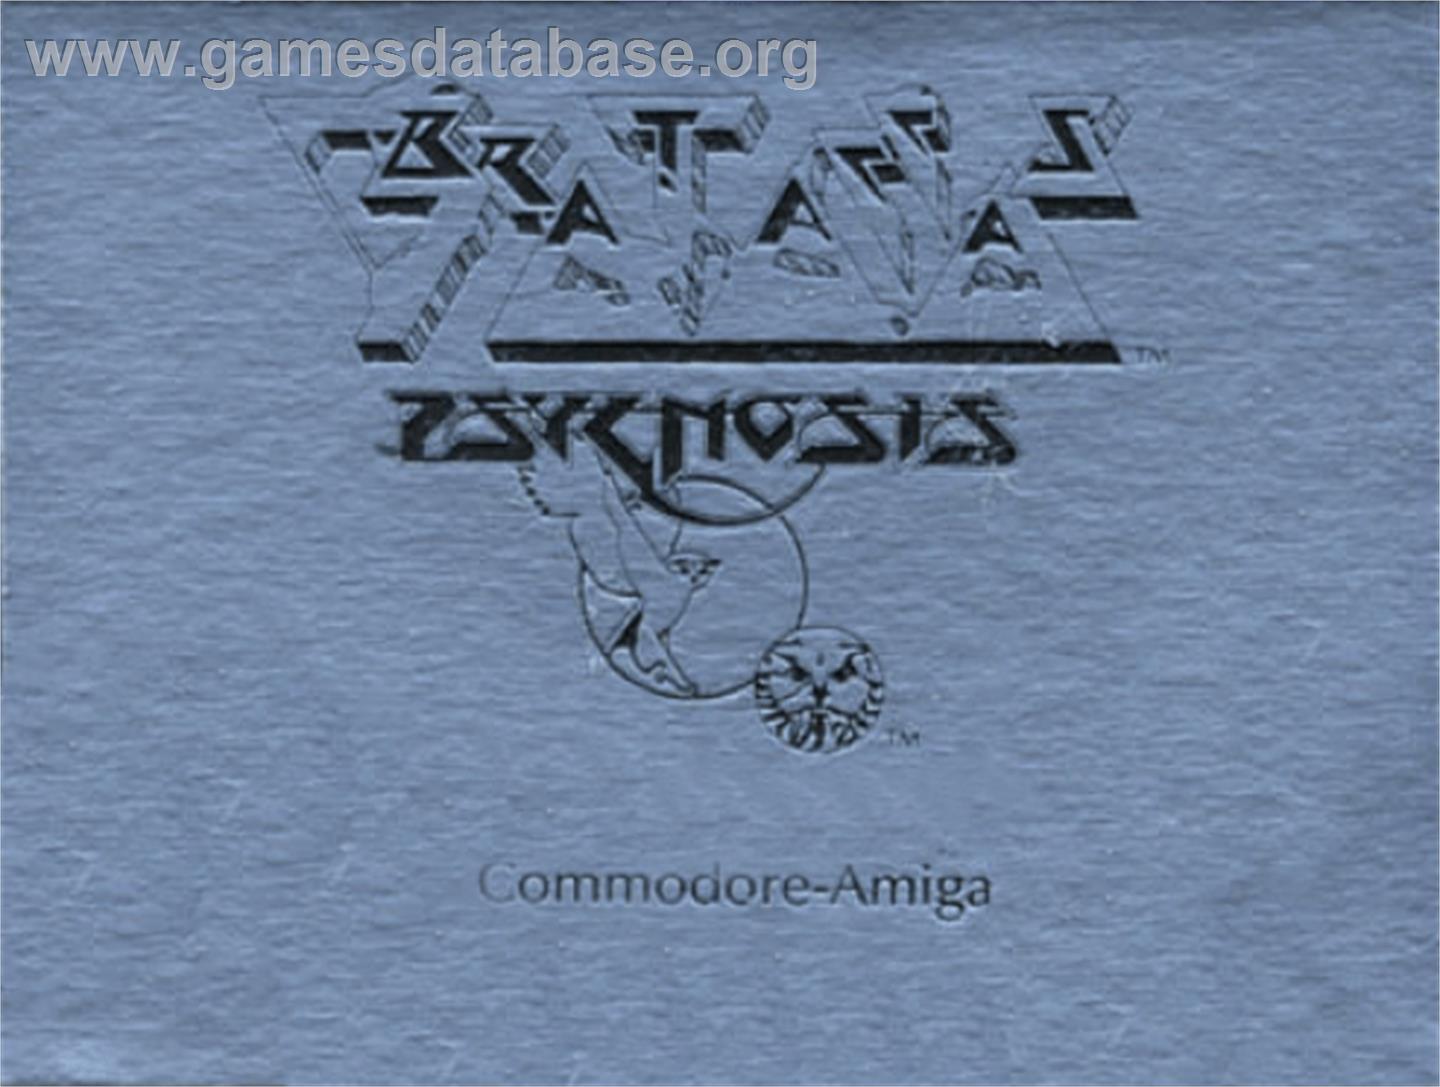 Brataccas - Commodore Amiga - Artwork - Cartridge Top